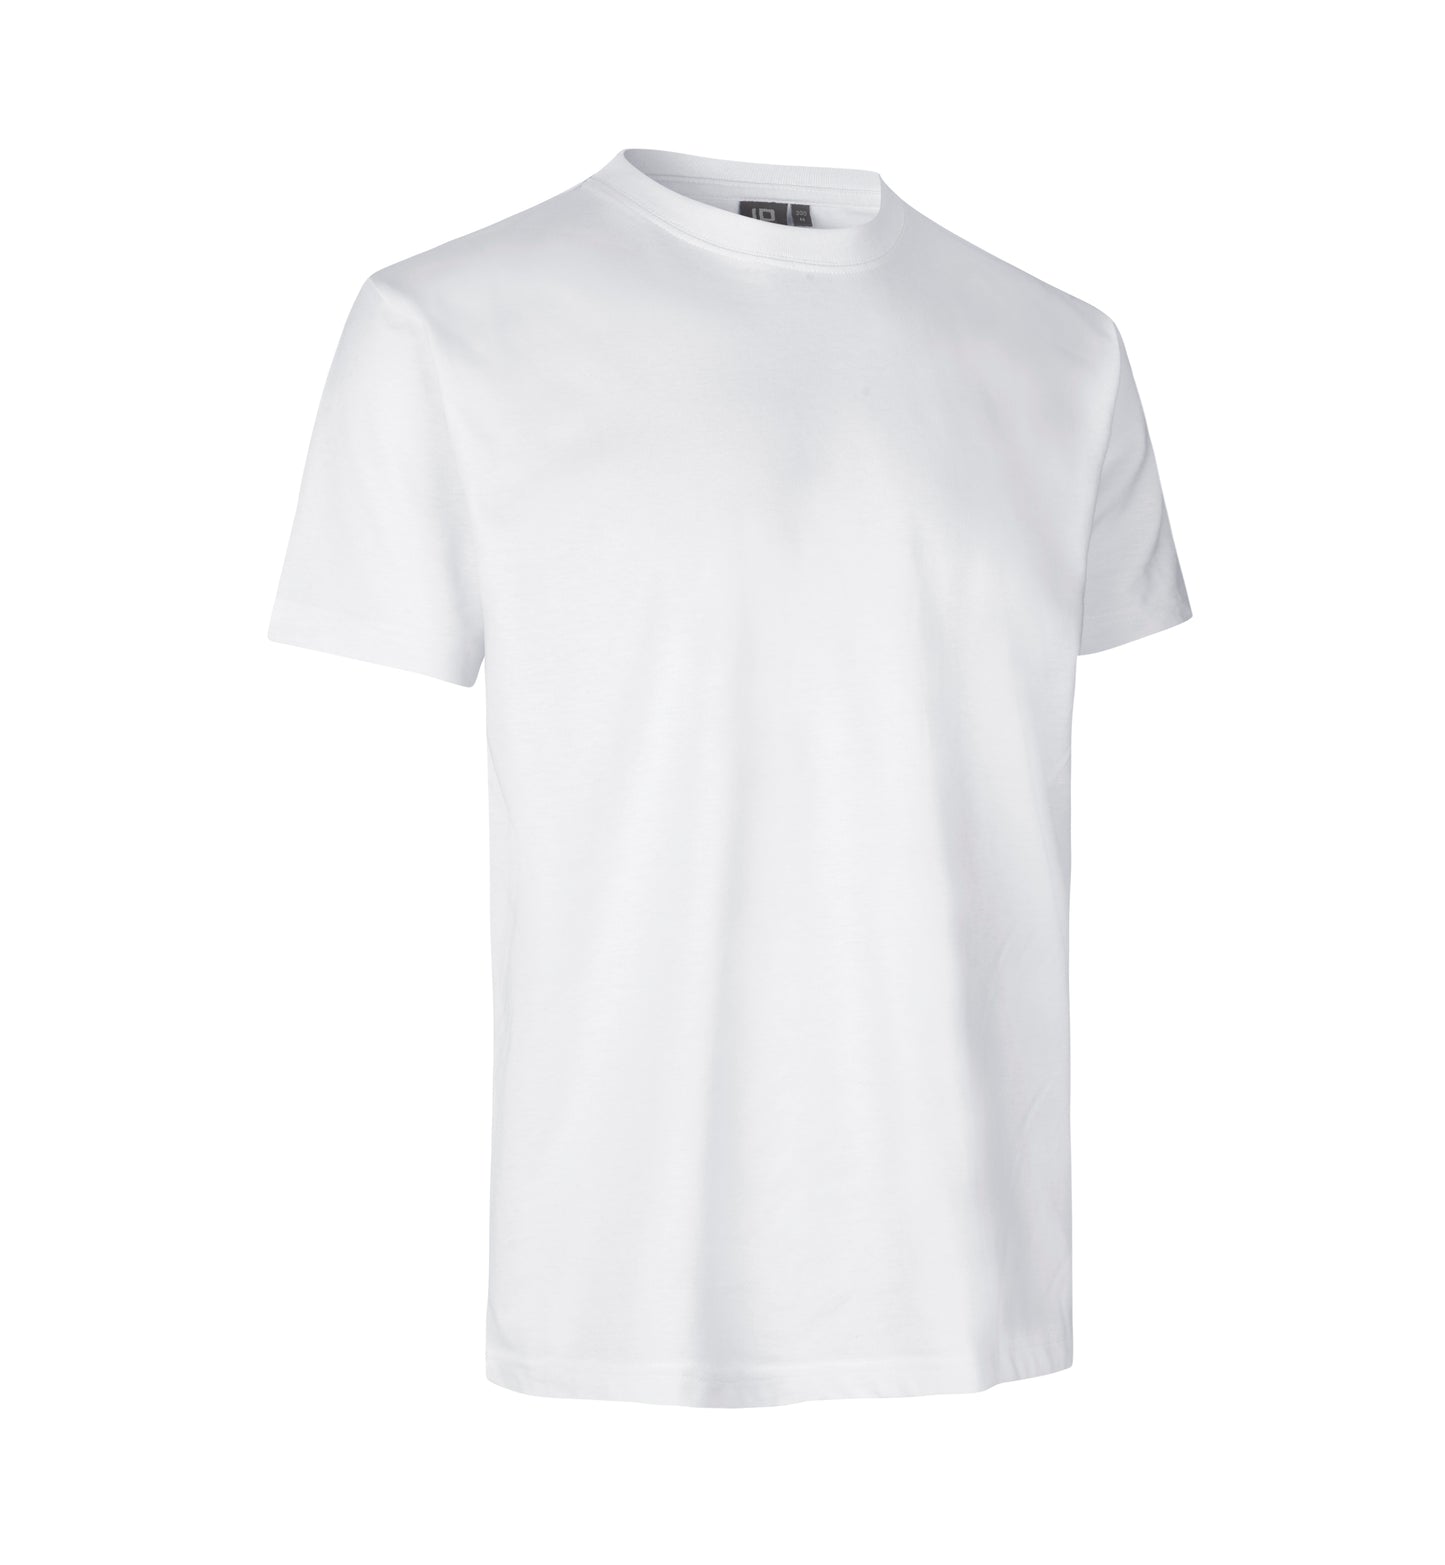 ID PRO Wear T-shirt 0300 (Salg Til Privat)